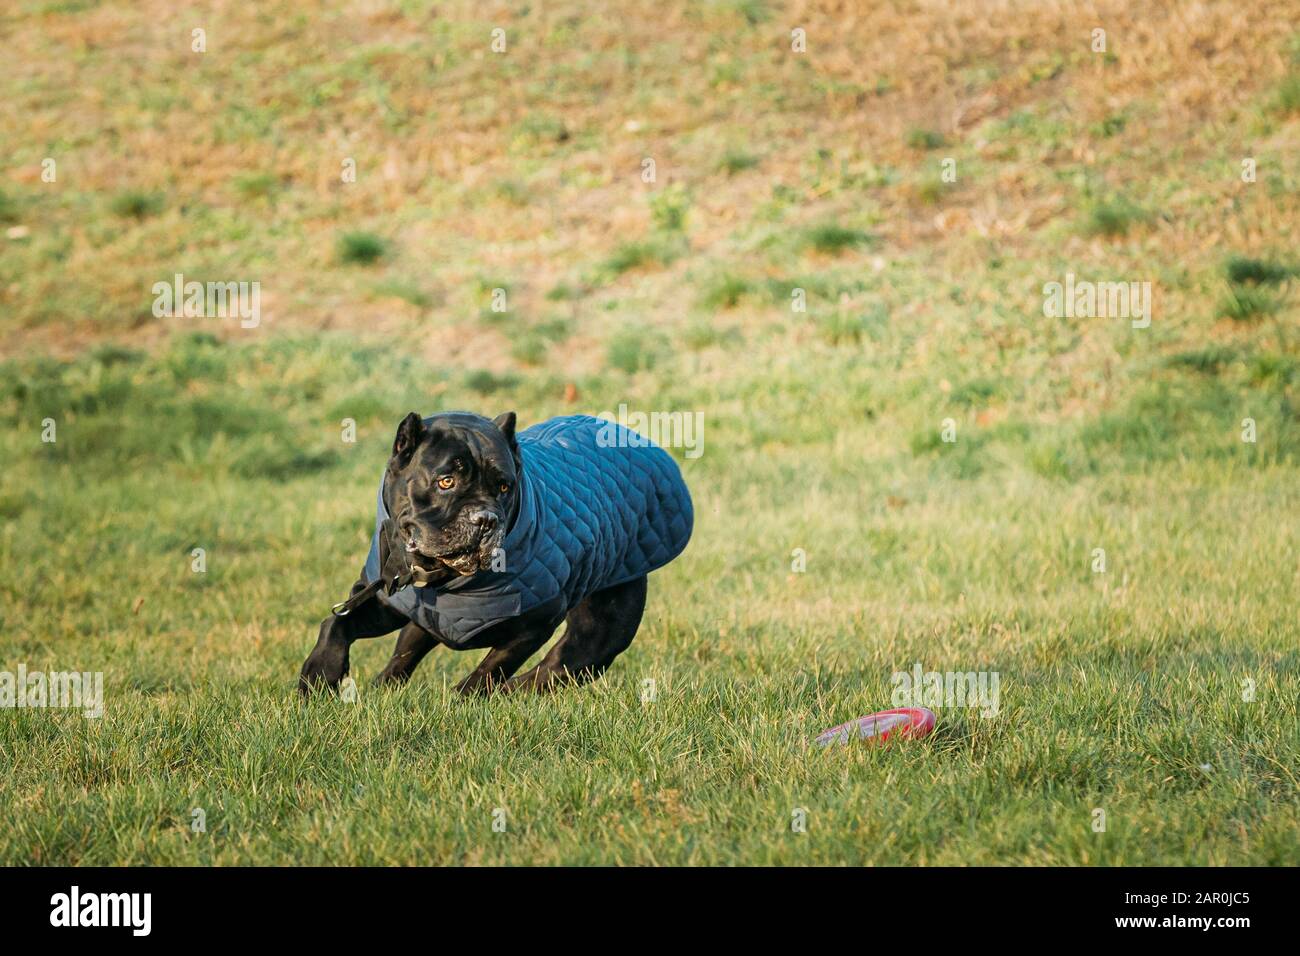 Active Black Cane Corso cane giocare in esecuzione con la piastra Toy all' aperto nel parco. Cane indossa in vestiti caldi. Grande cane razze. Foto Stock